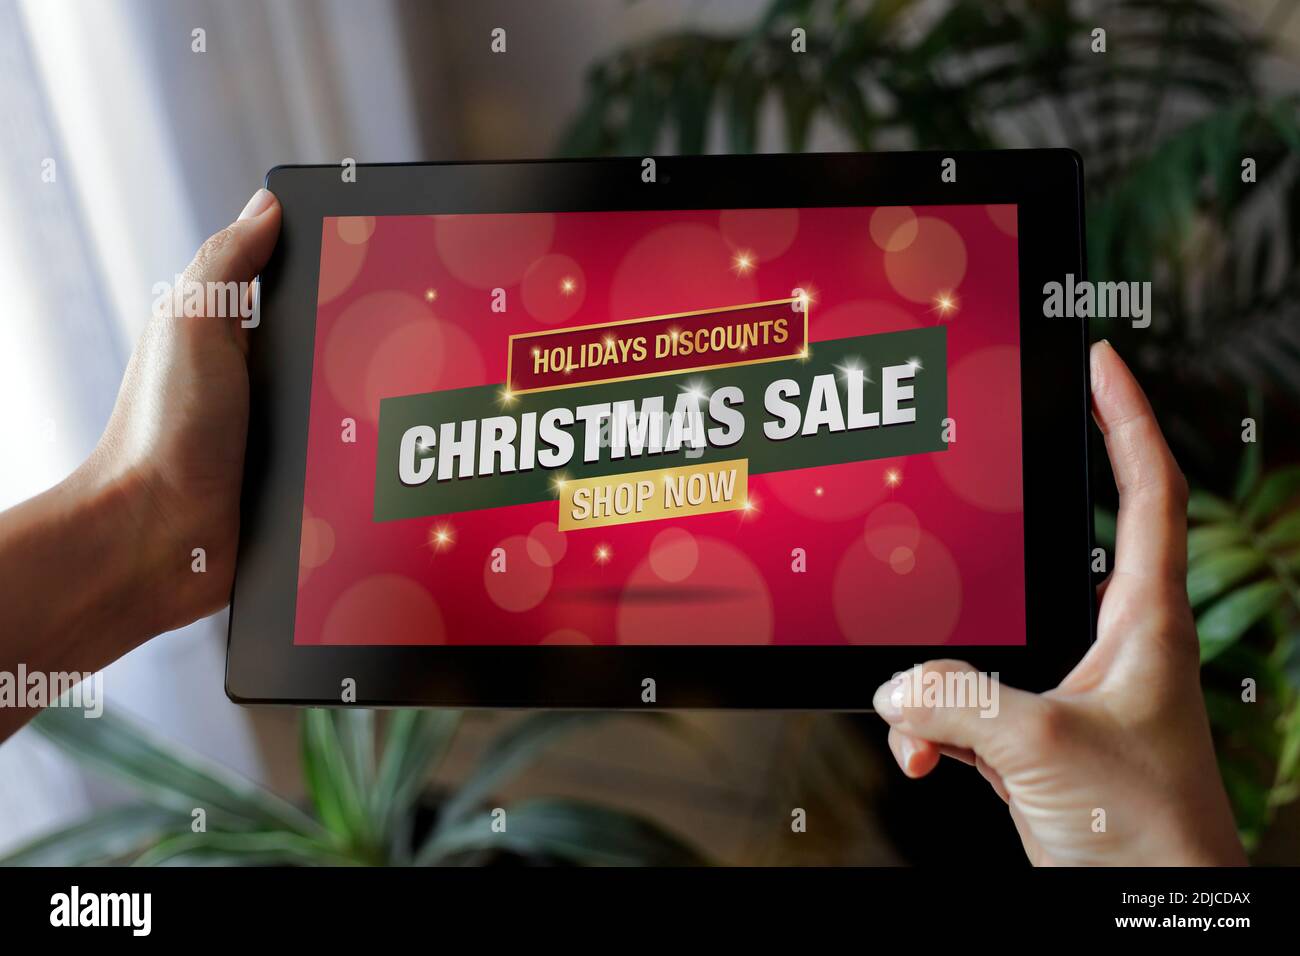 Weihnachtsverkauf Werbung auf dem Bildschirm des Tablets. Frau hält einen Pad-Computer mit Ankündigung von Weihnachten auf dem Display. Stockfoto